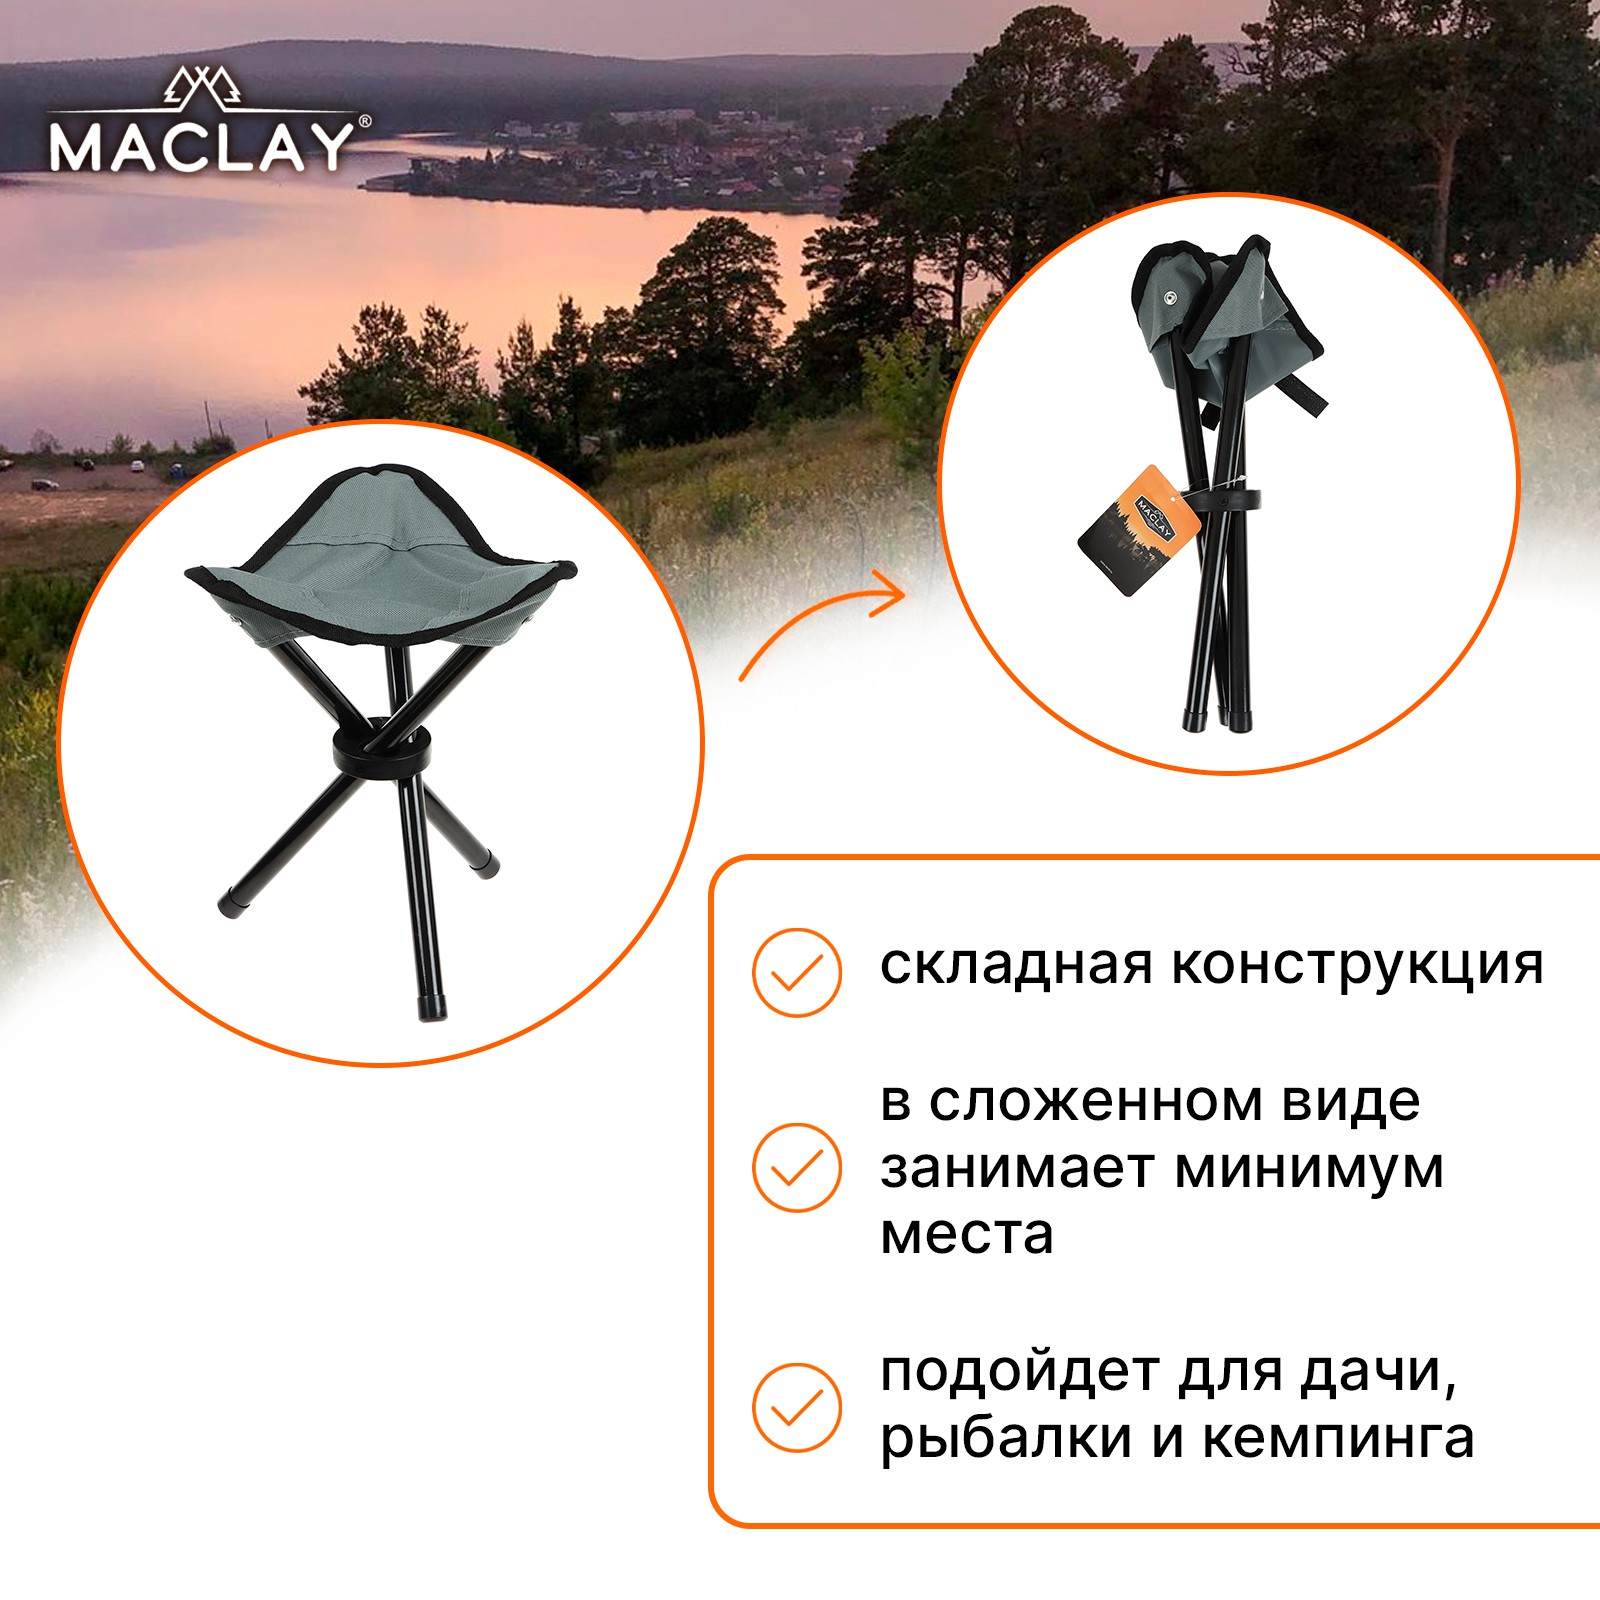 Стул туристический Maclay складной 22х20х30 см до 60кг серый - фото 2